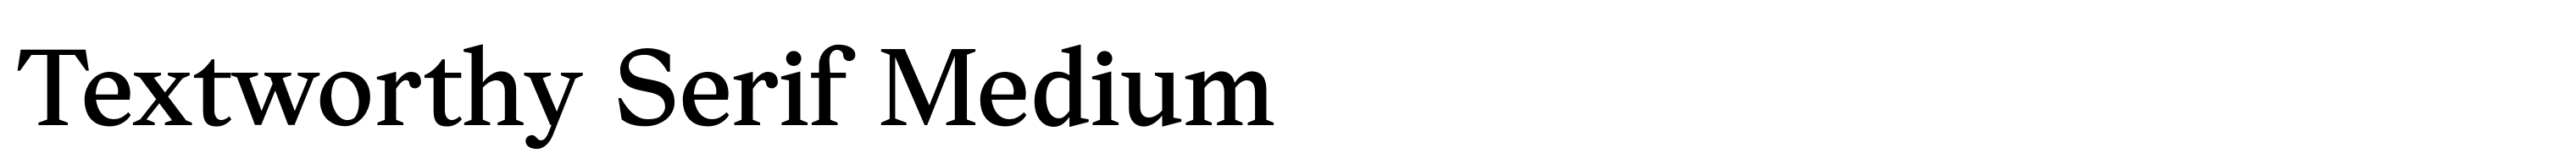 Textworthy Serif Medium